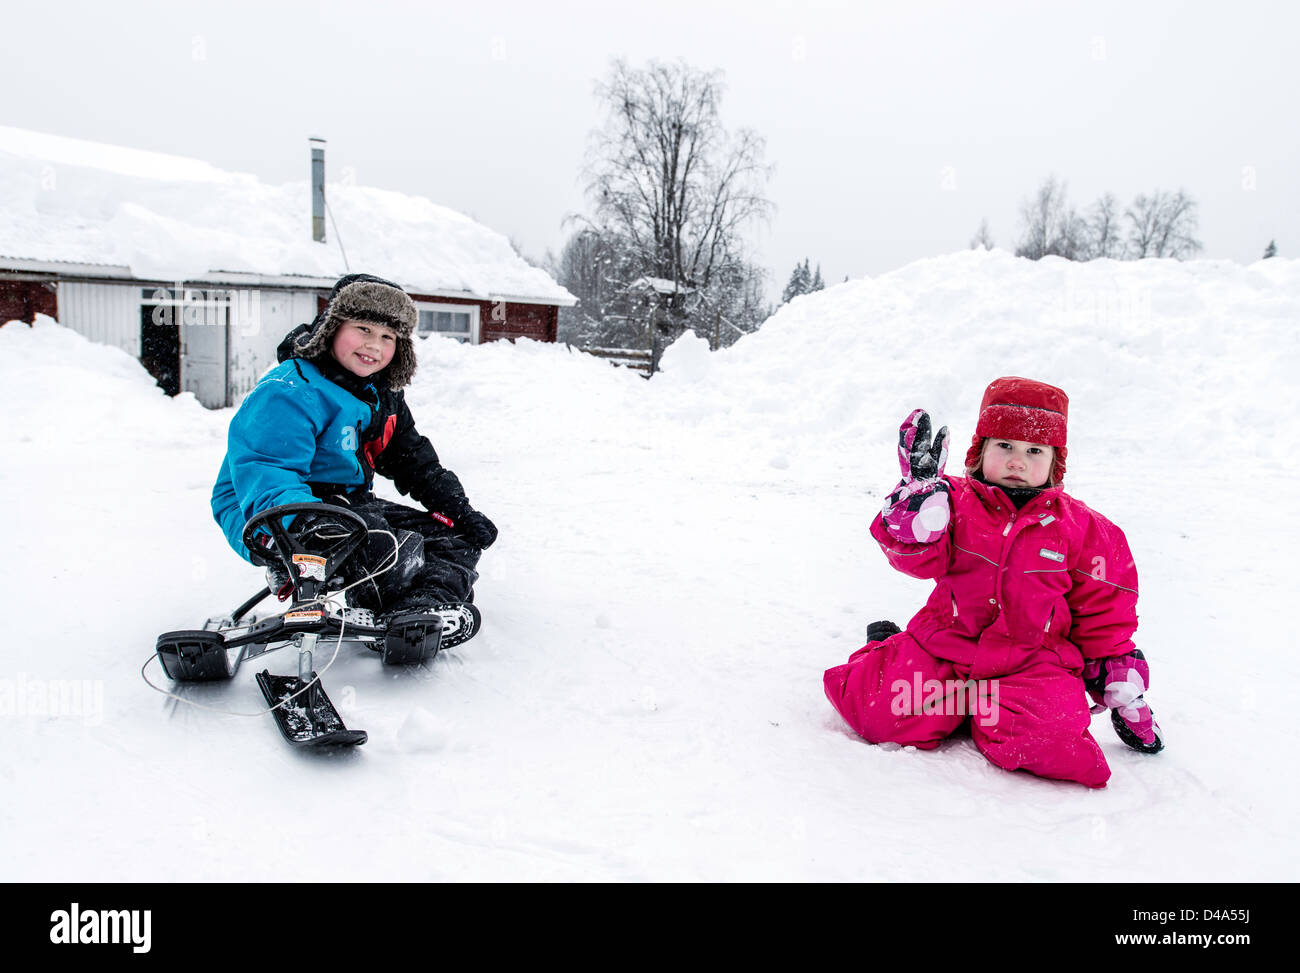 Les enfants sami en Laponie suédoise Suède Scandinavie Banque D'Images